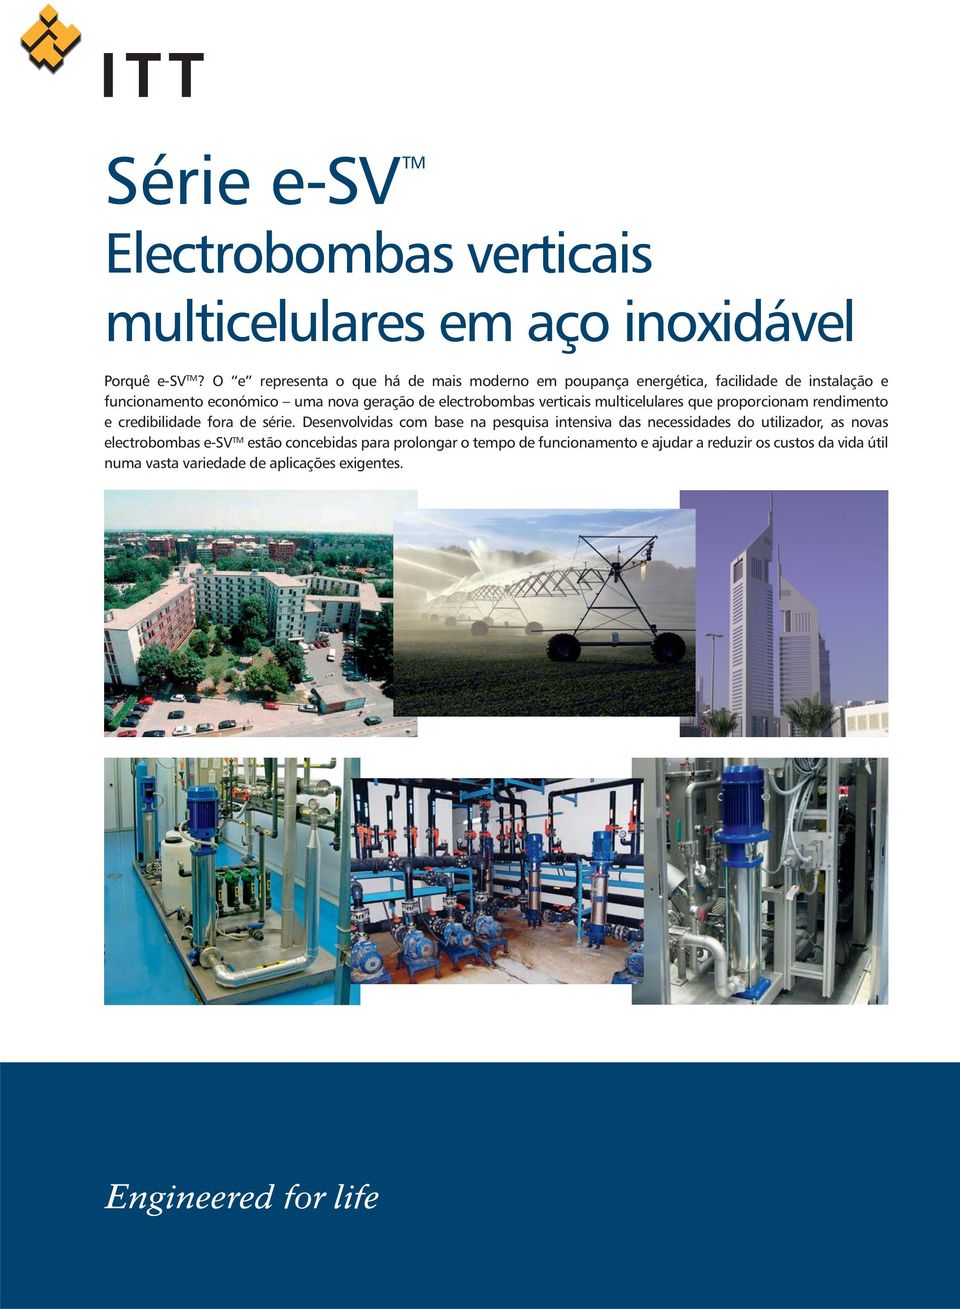 electrobombas verticais multicelulares que proporcionam rendimento e credibilidade fora de série.